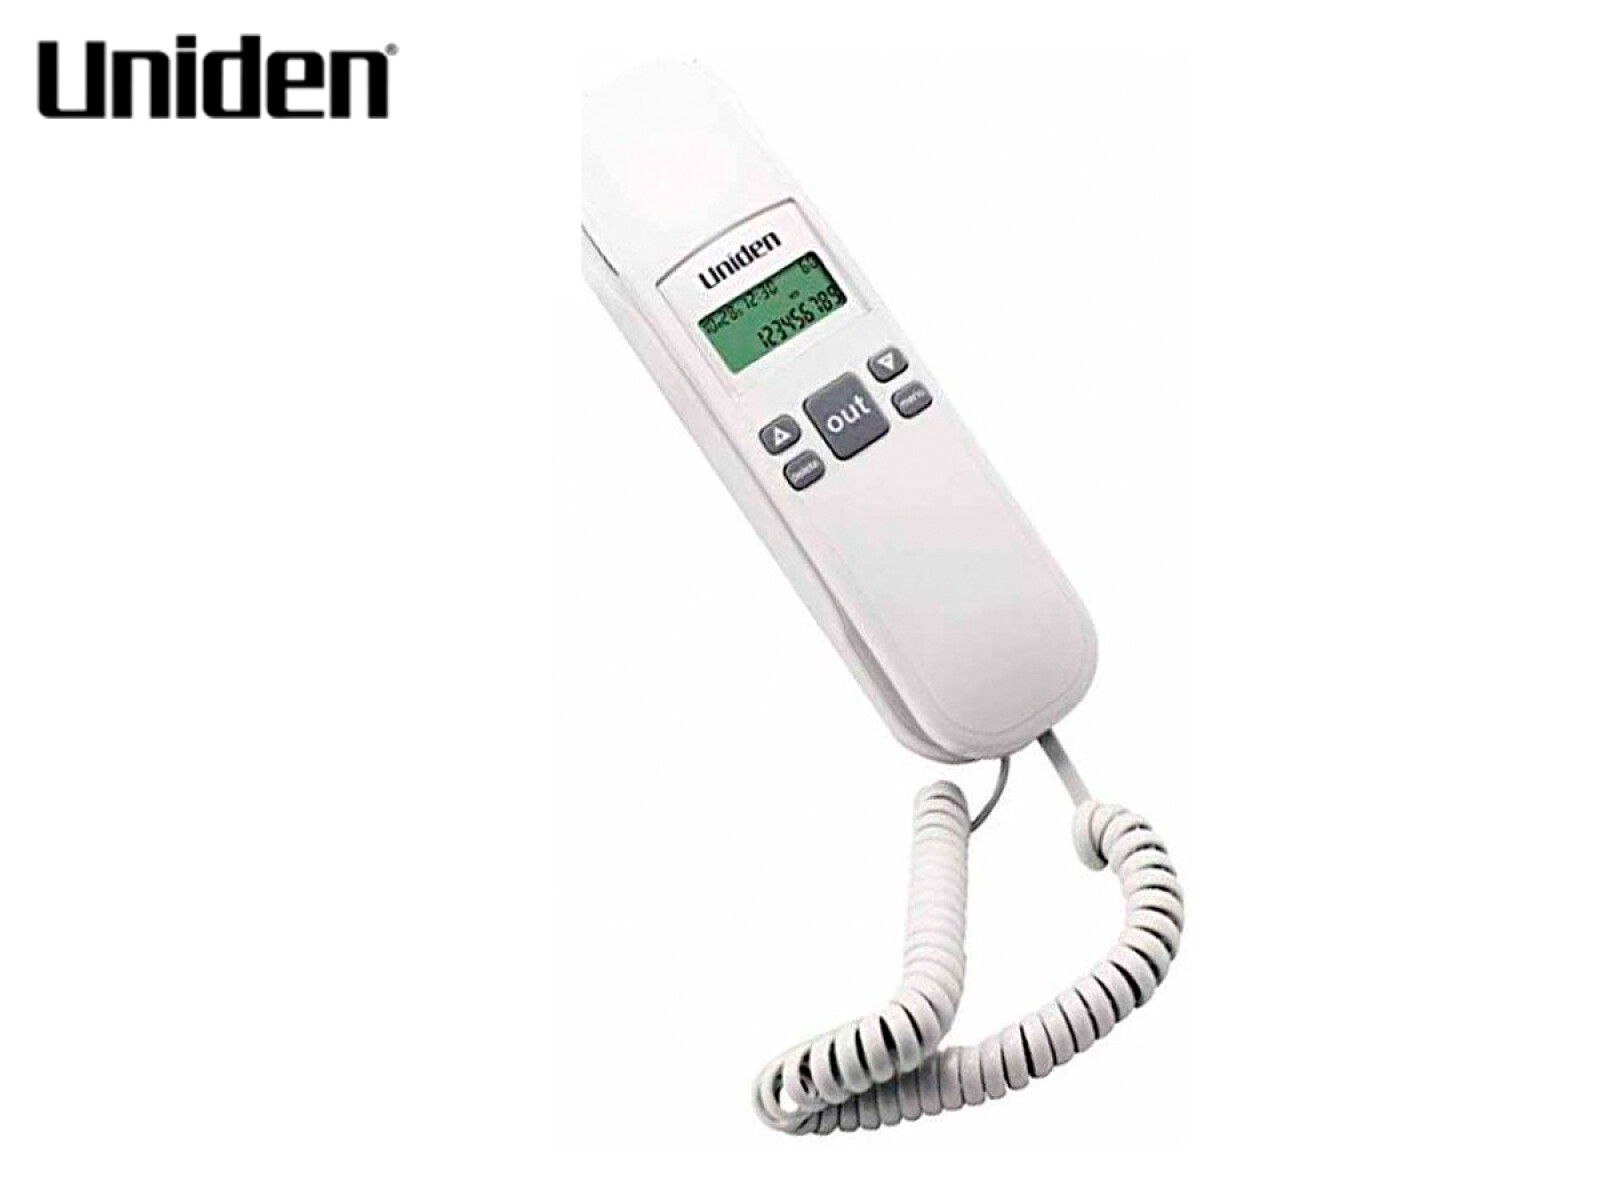 Teléfono Zapatilla Uniden con Captor - BLANCO 